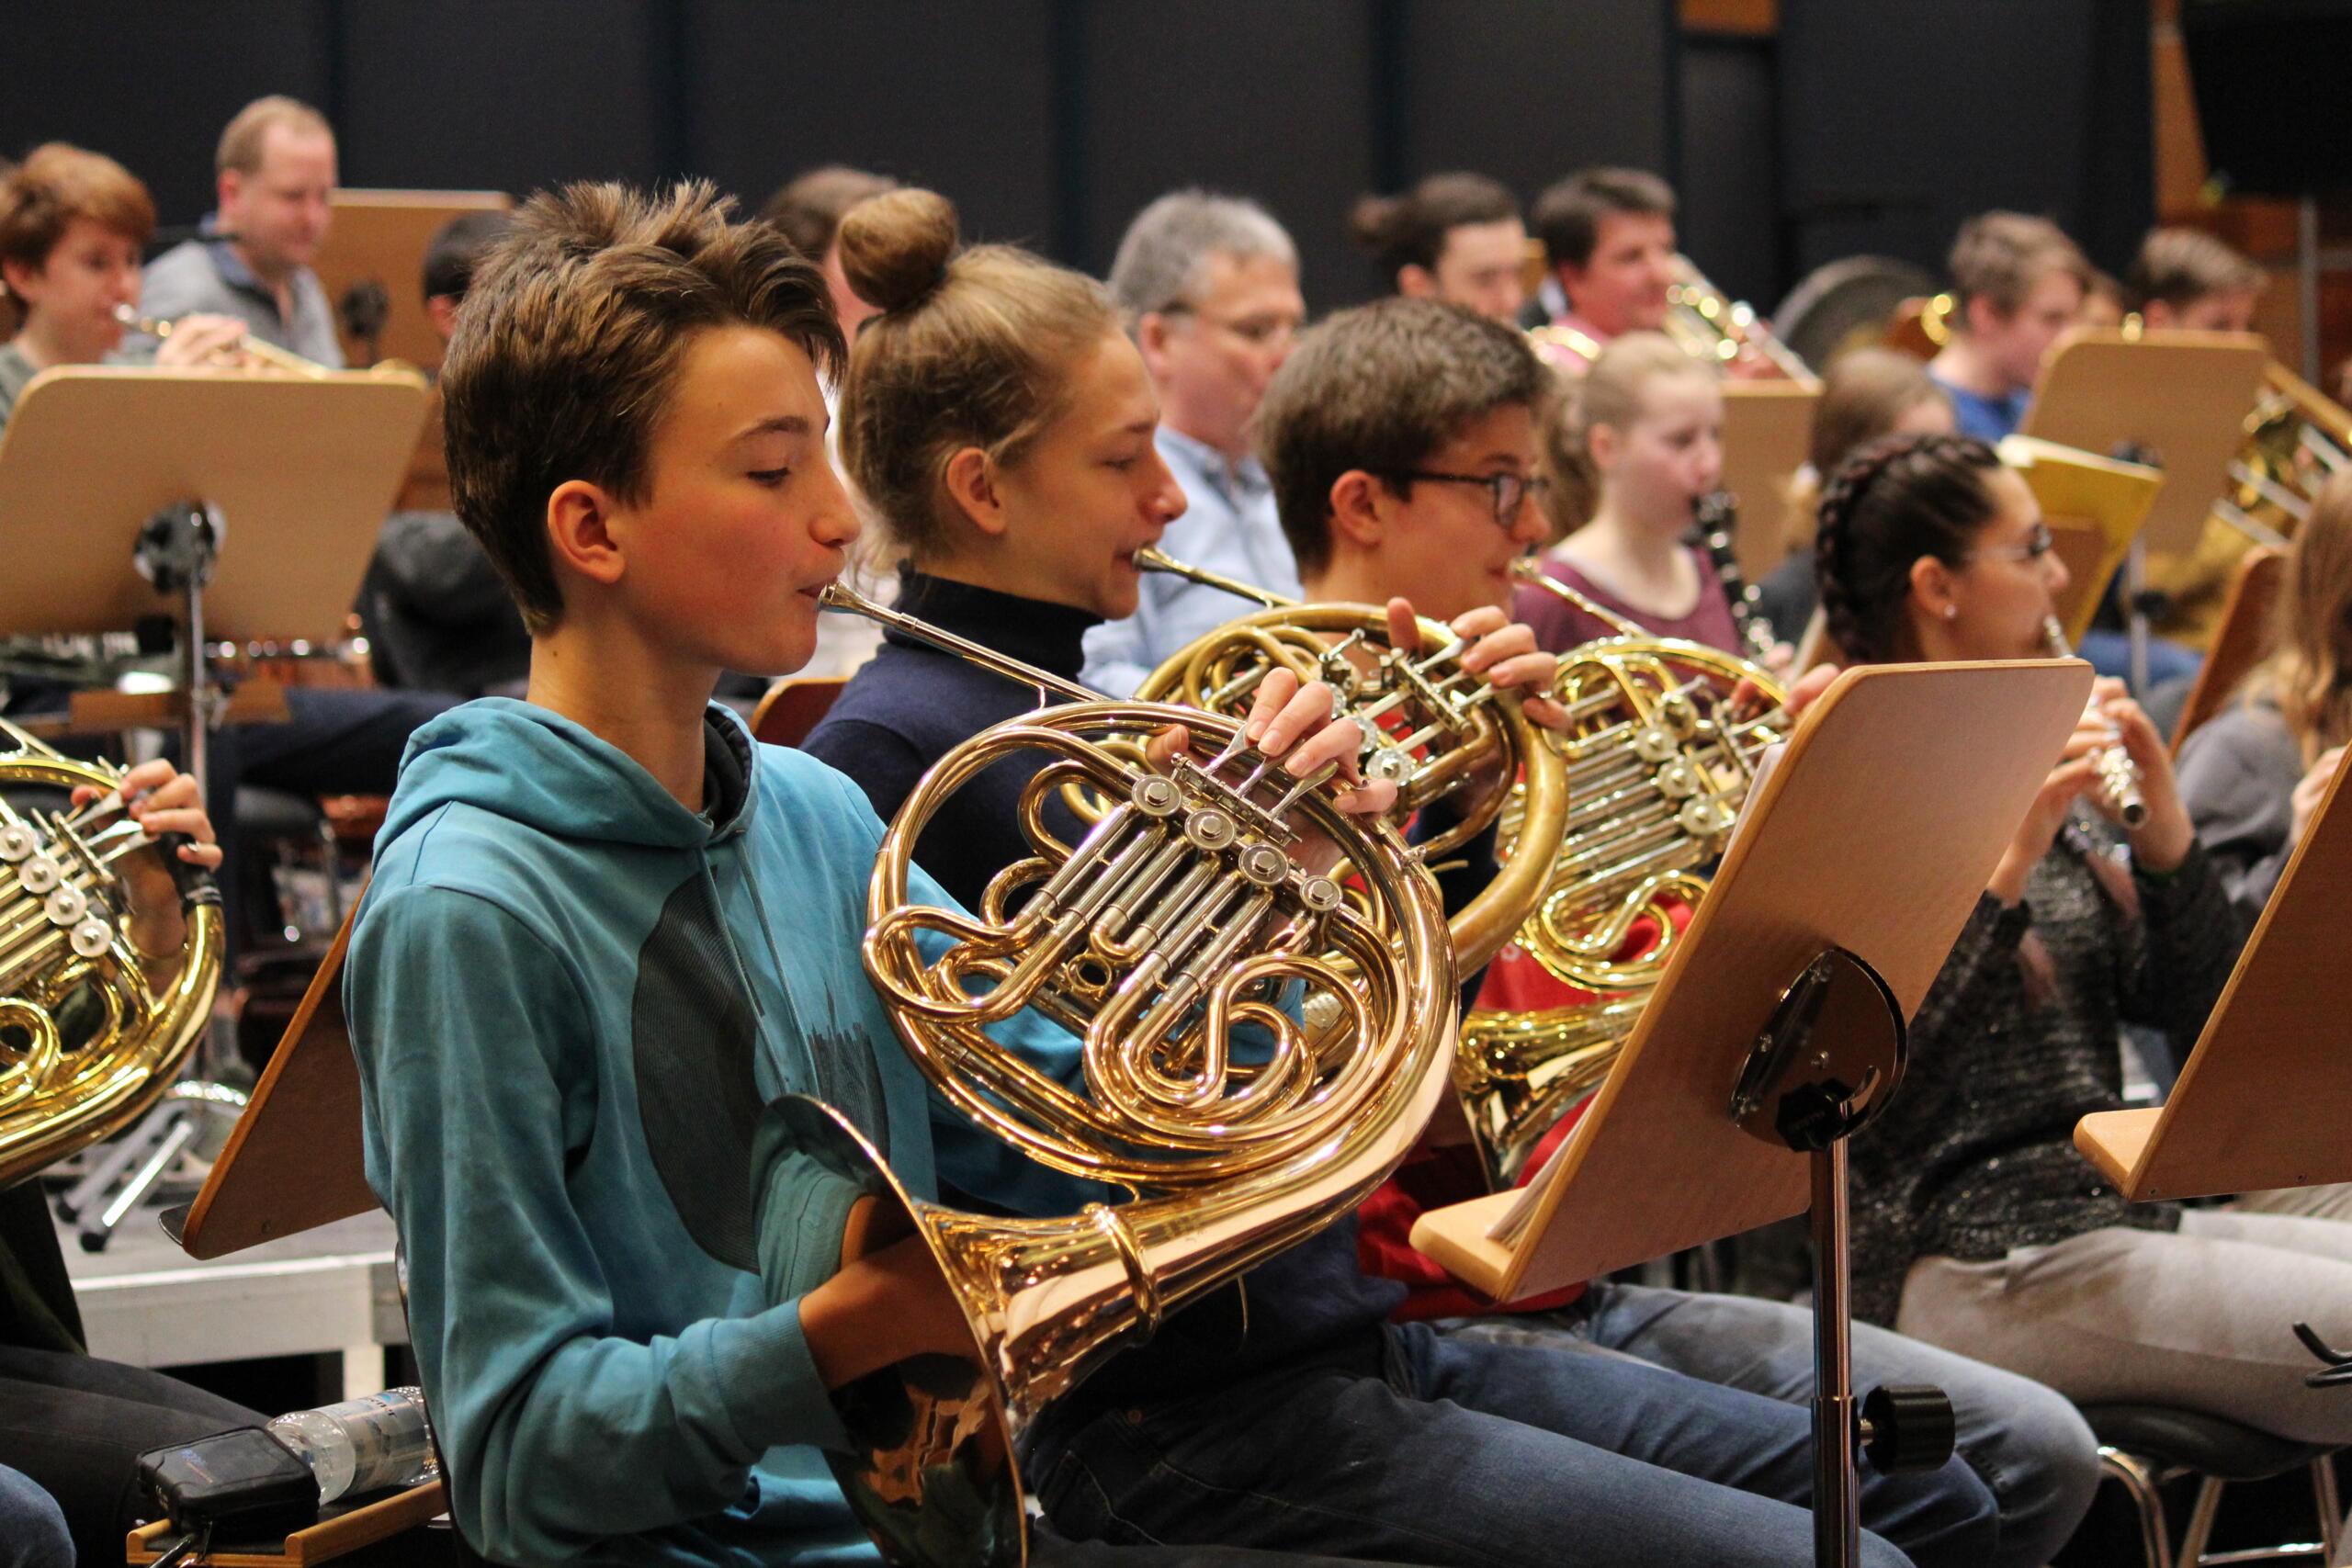 Schüler proben für das Abschlusskonzert von Klasse Klassik, im Vordergrund ein junger Hornist.